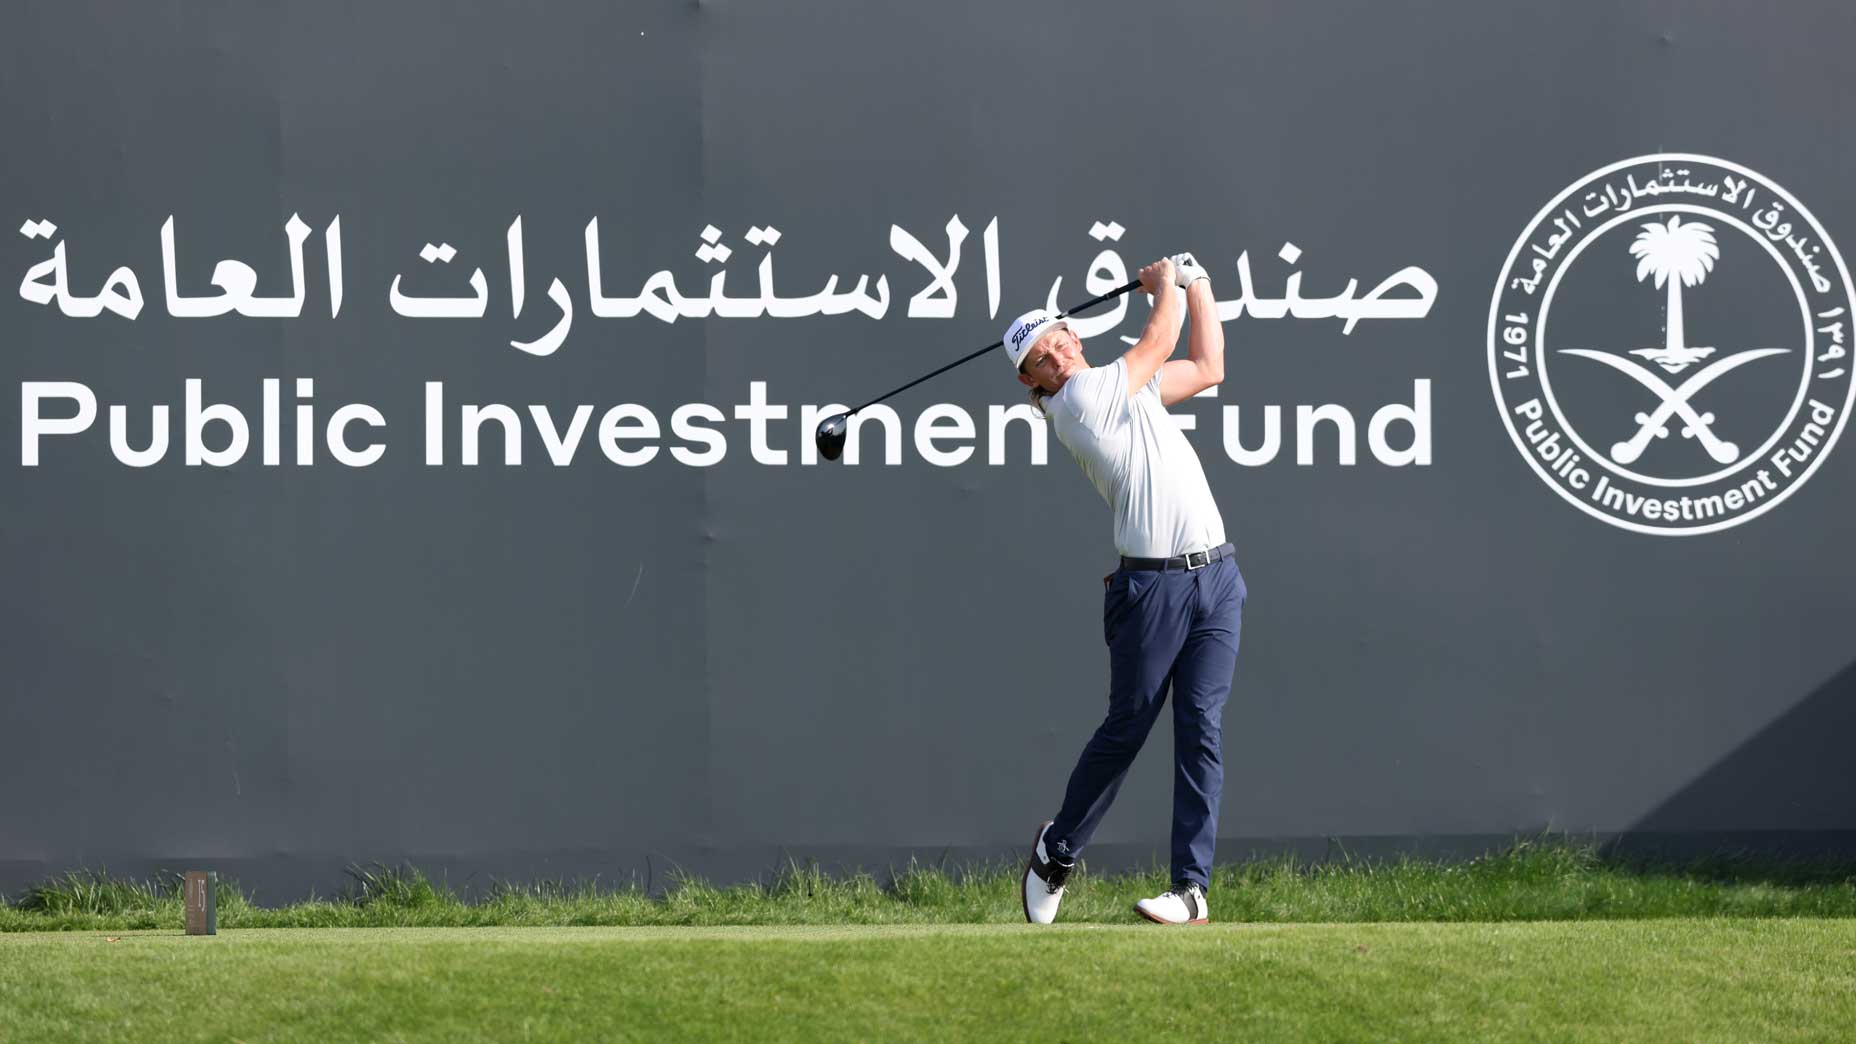 Golf news 2022: Adam Scott in discussions to join Saudi-back Super